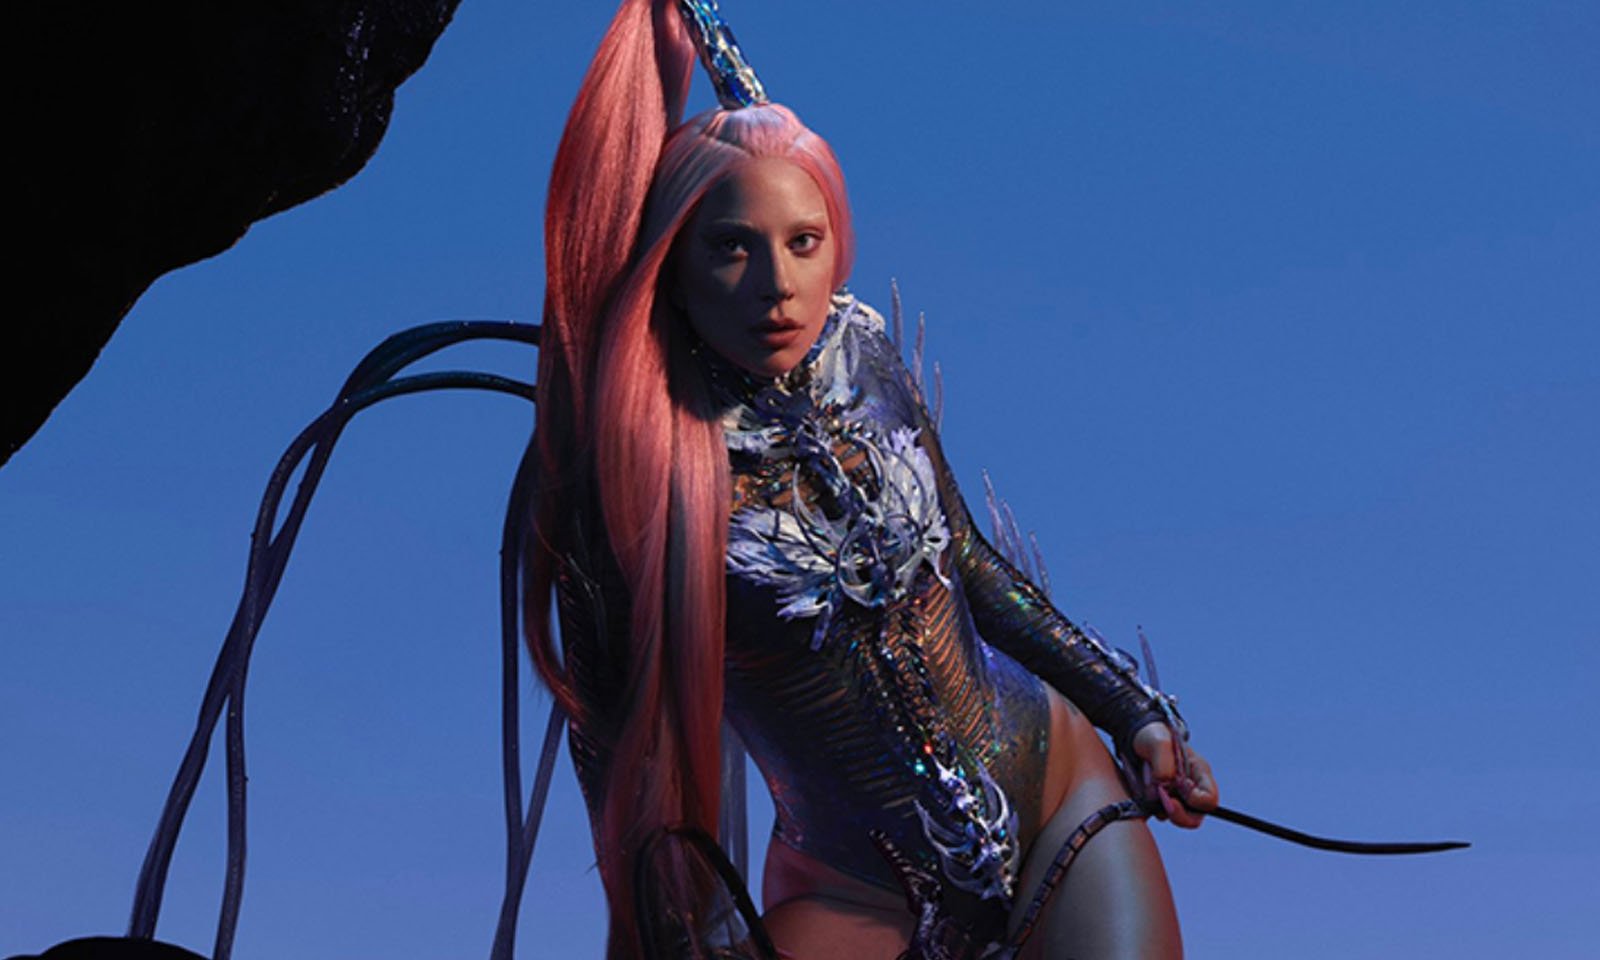 “Chromatica” de Lady Gaga será relançado com 22 faixas, segundo Amazon